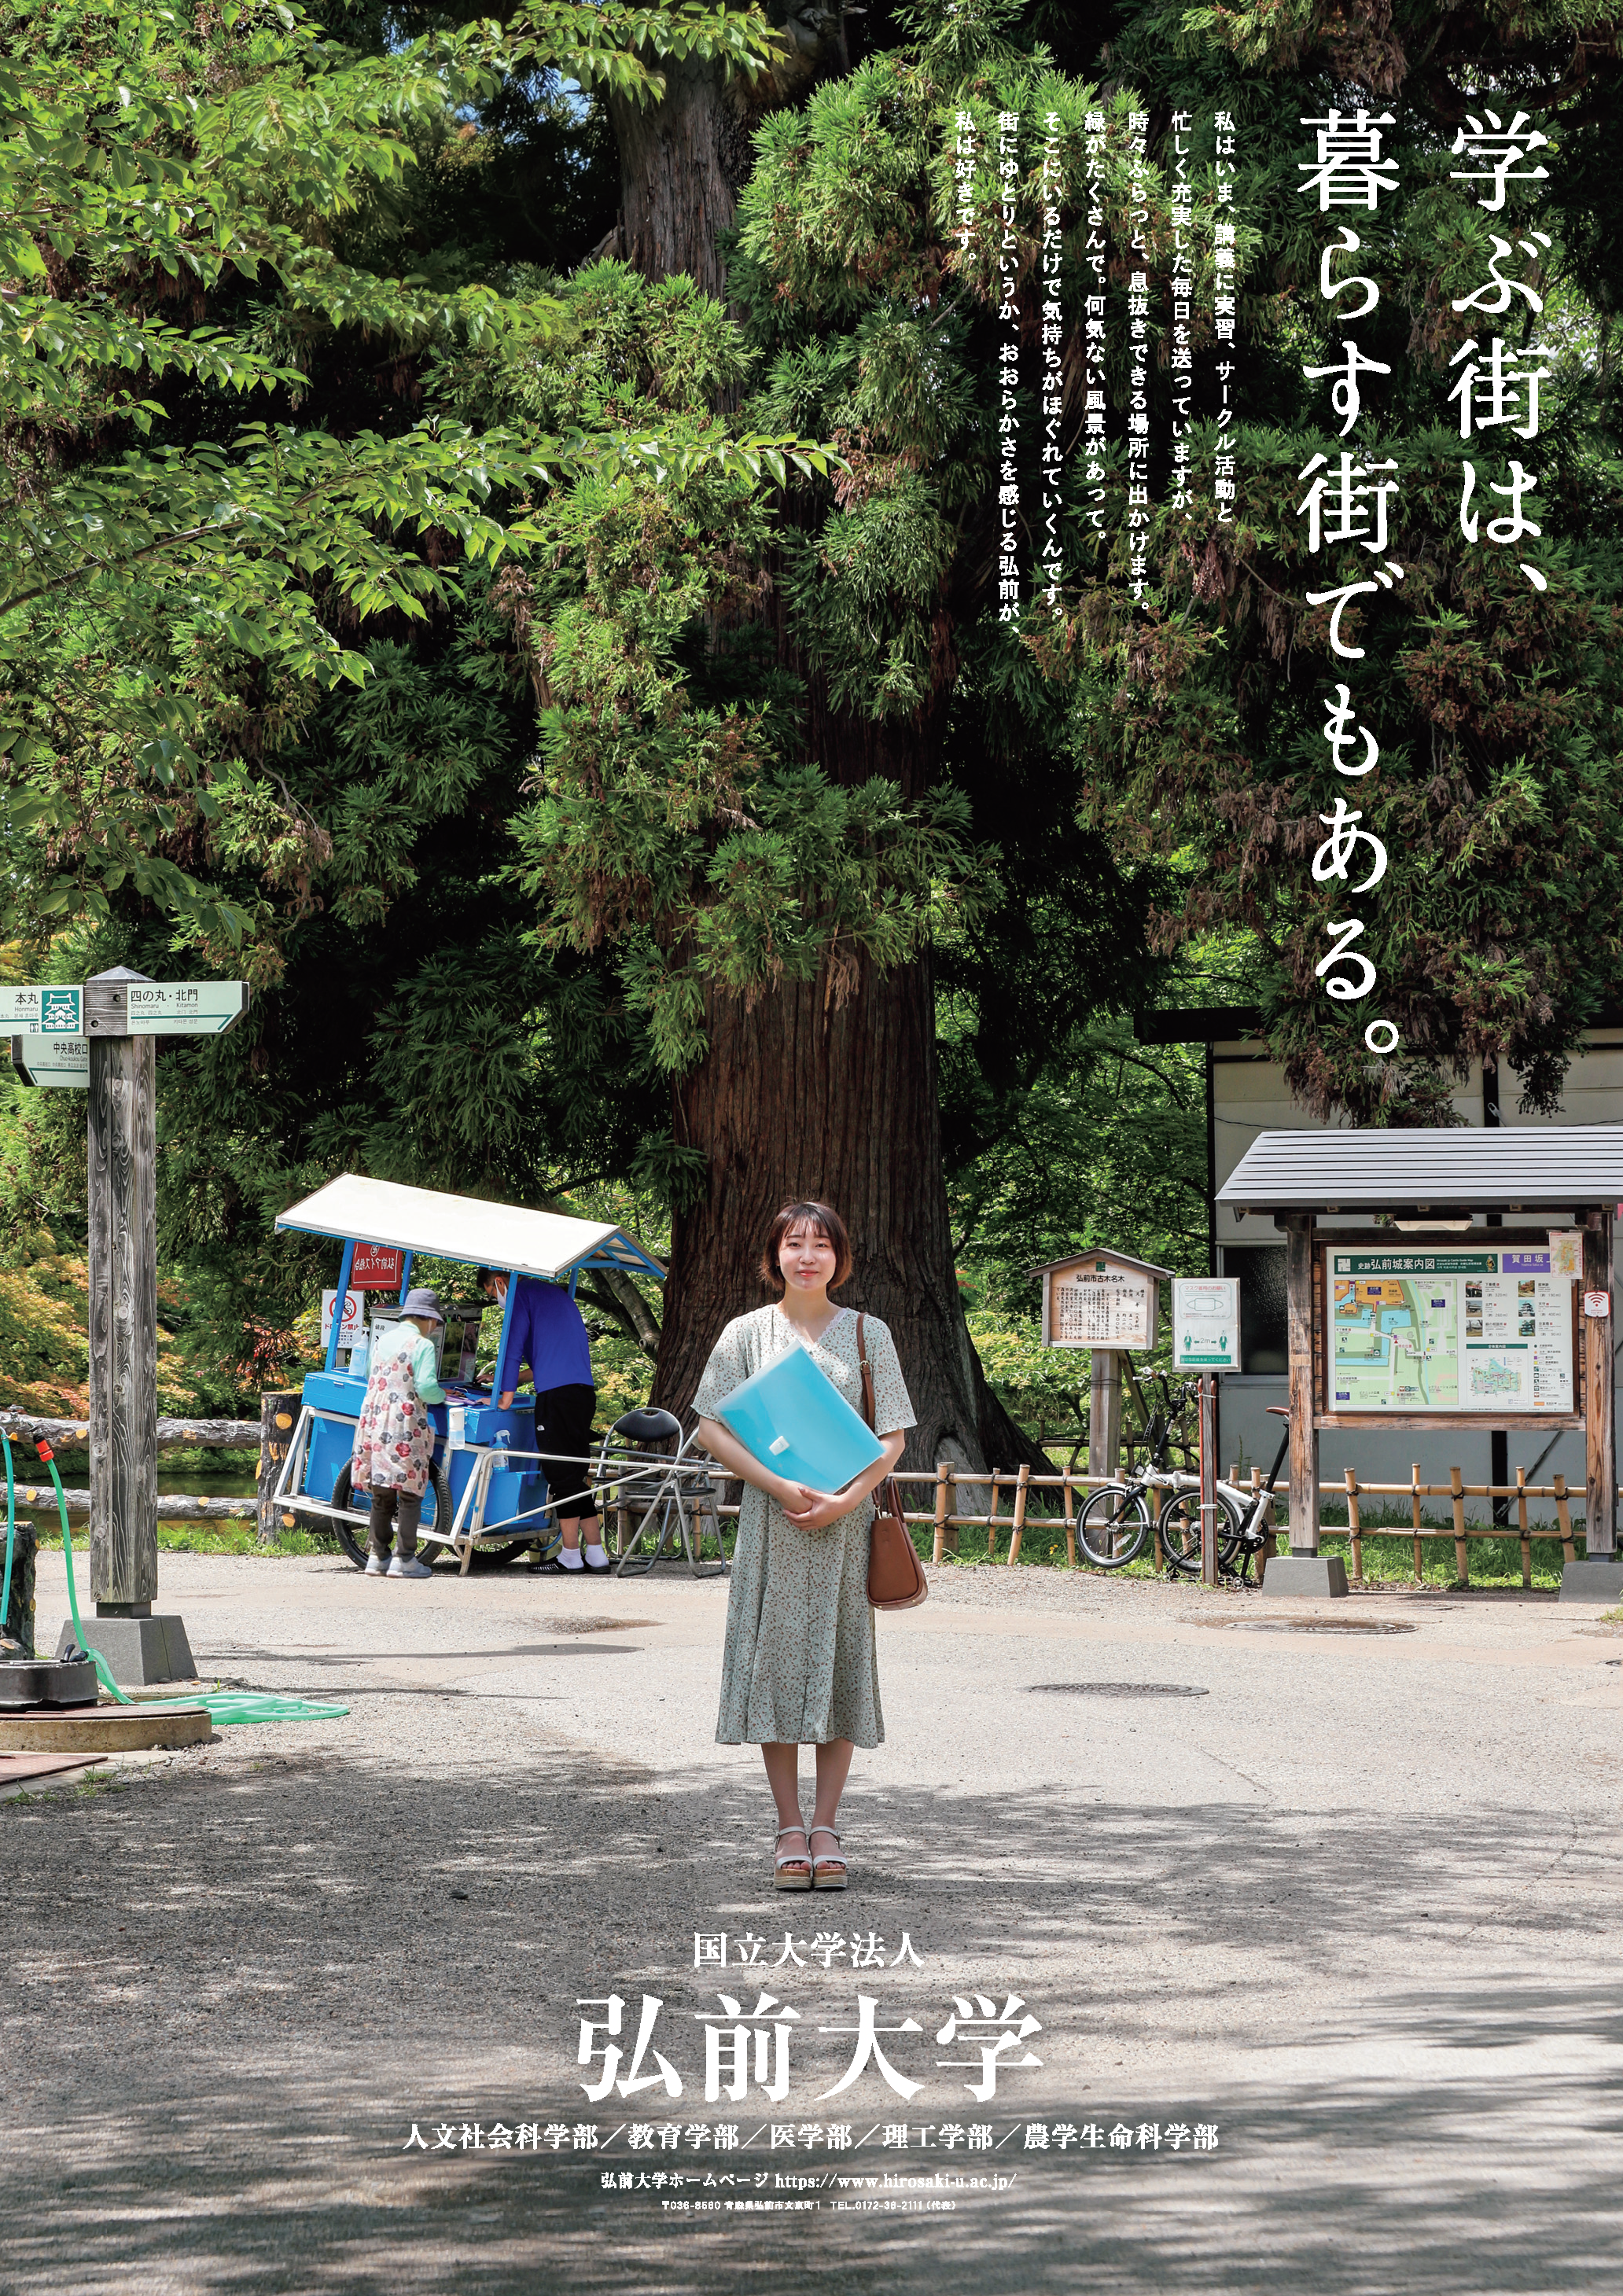 弘前大学が令和4年度のイメージポスターとイメージムービーを公開 -- 「学ぶ街は、暮らす街でもある。」がコンセプト